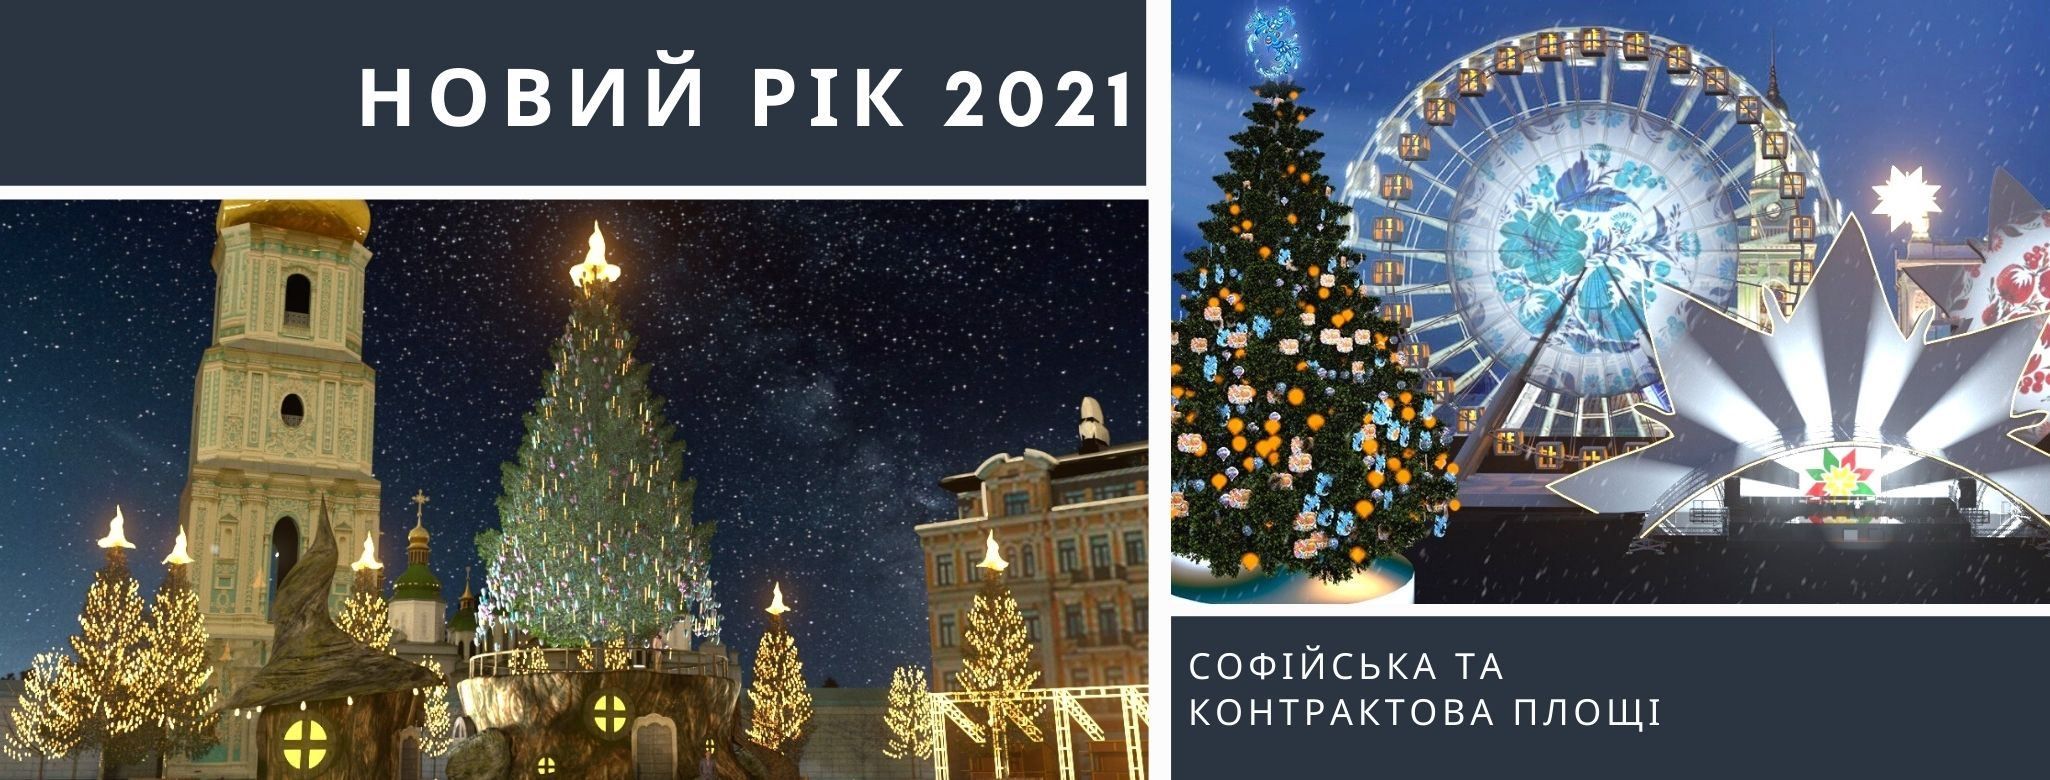 Казковий ліс: як виглядатиме головна ялинка України в Києві на Новий рік